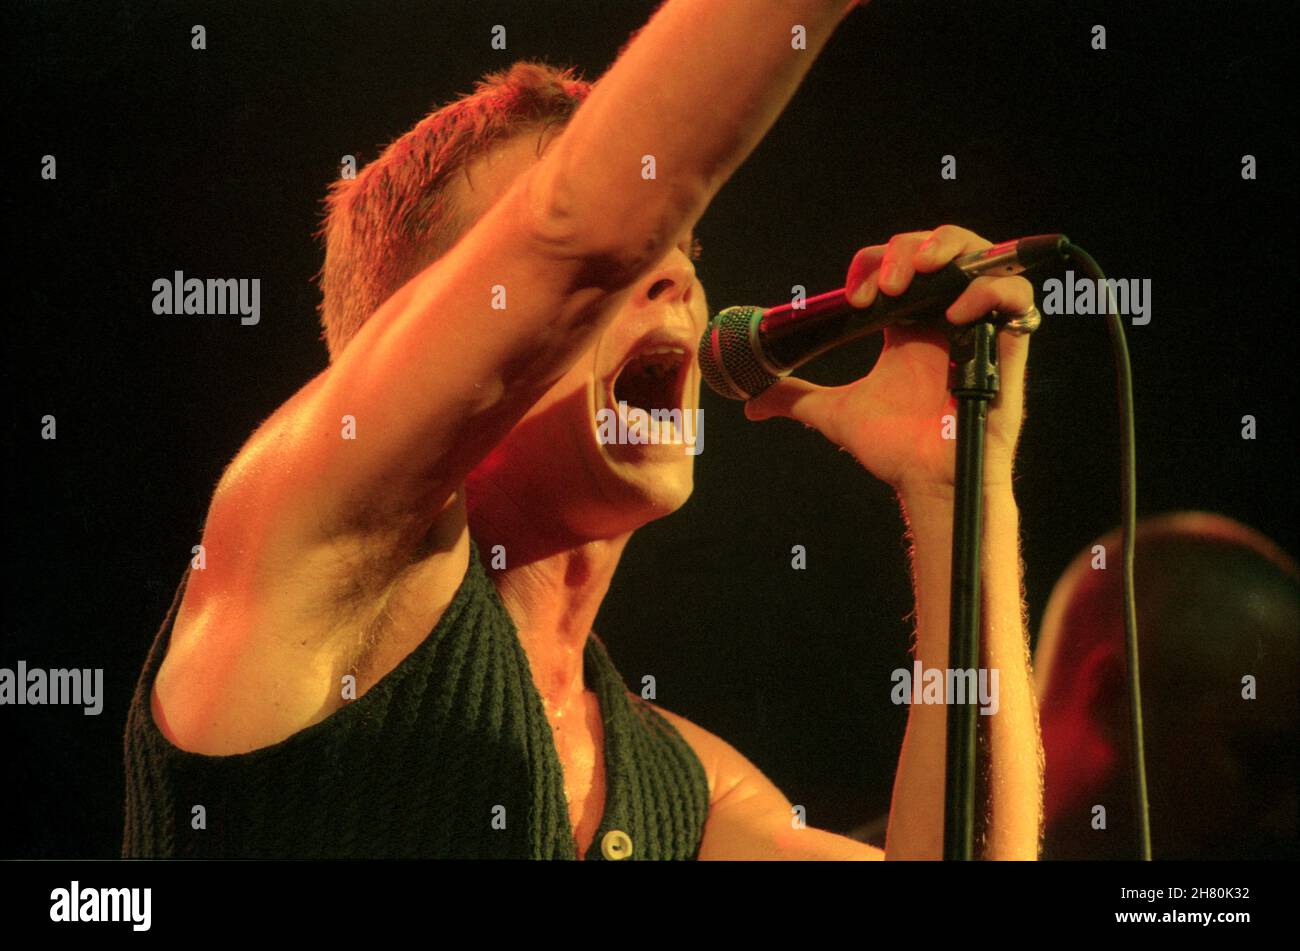 The Stranglers Concert, Wembley Arena, Londra, 26/3/1994 - Paul Roberts, cantante dal 1990 al 2006, cantando dal vivo sul palco Foto Stock